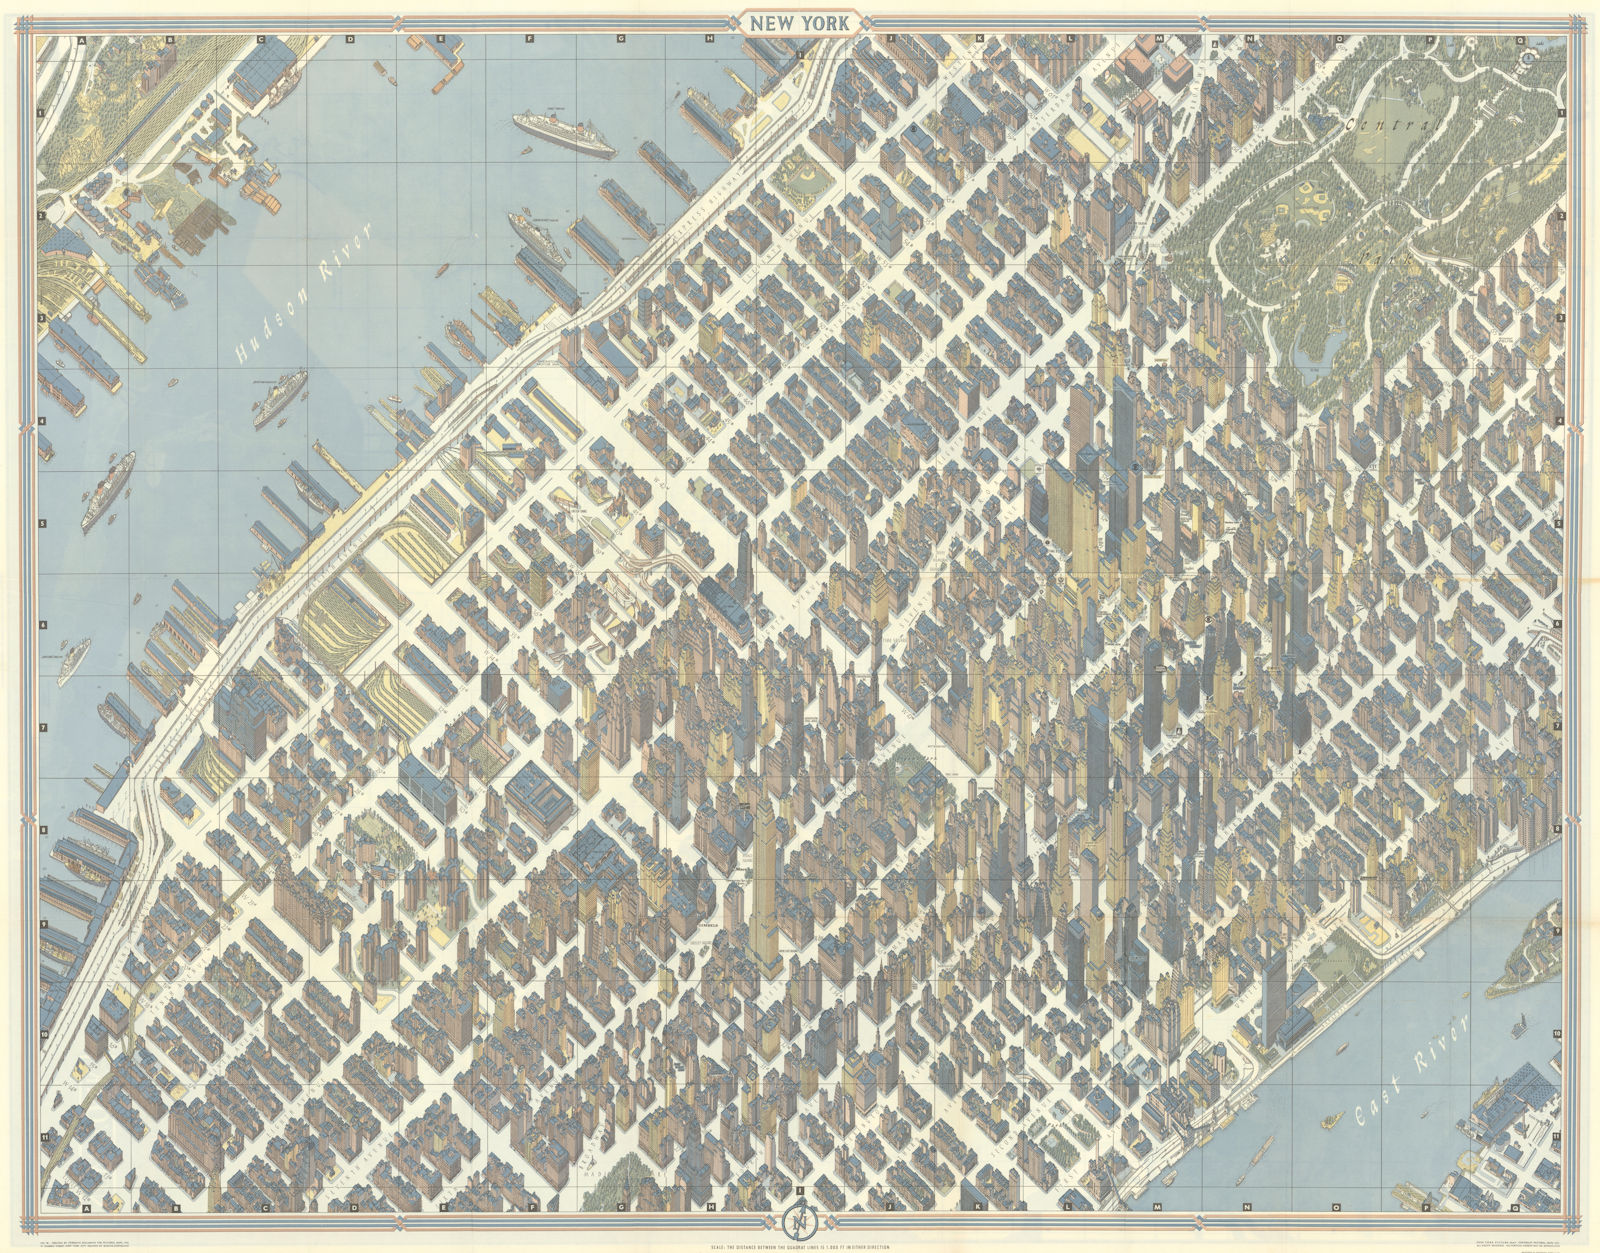 Associate Product New York pictorial bird's eye view city plan. Manhattan #40 BOLLMANN 1962 map